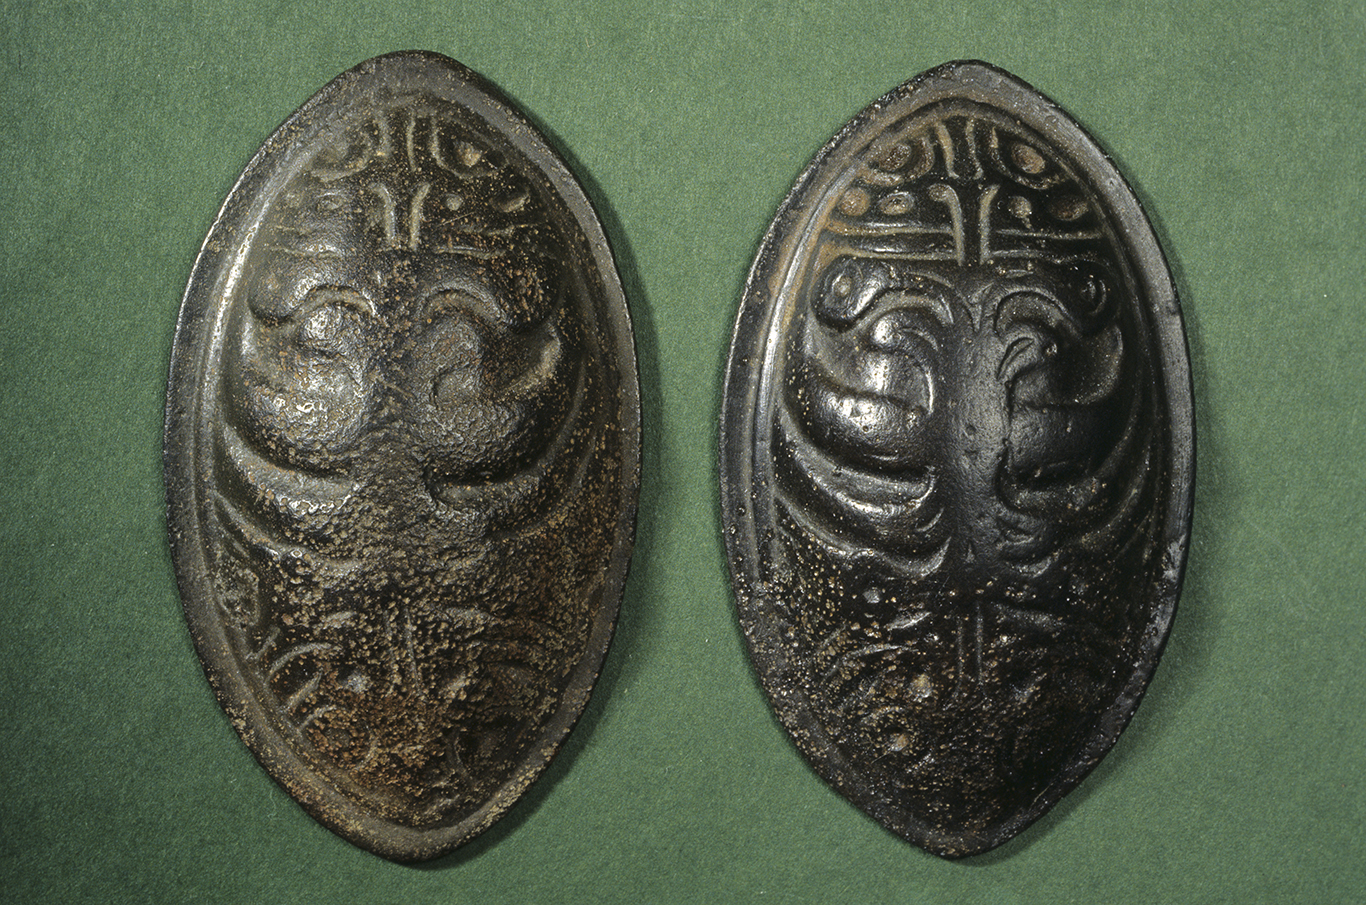 Kaksi soikeaa kupurasolkea Ilomantsista. Kupurasoljet ovat metallisia, koristeellisia soikeanmuotoisia solkia vihreällä taustalla. Kuva: Museovirasto.